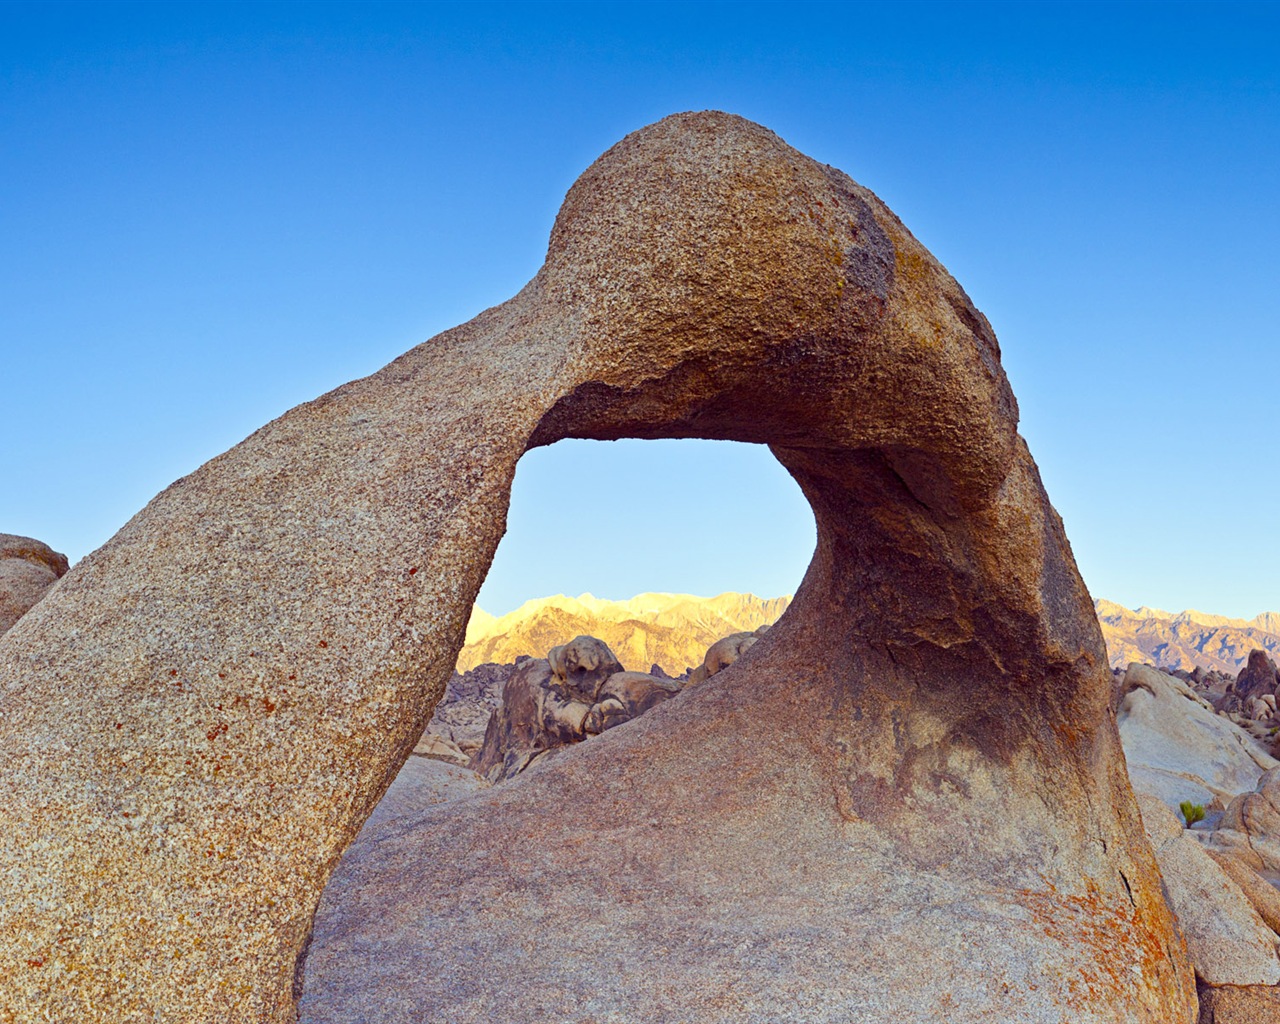 Les déserts chauds et arides, de Windows 8 fonds d'écran widescreen panoramique #5 - 1280x1024